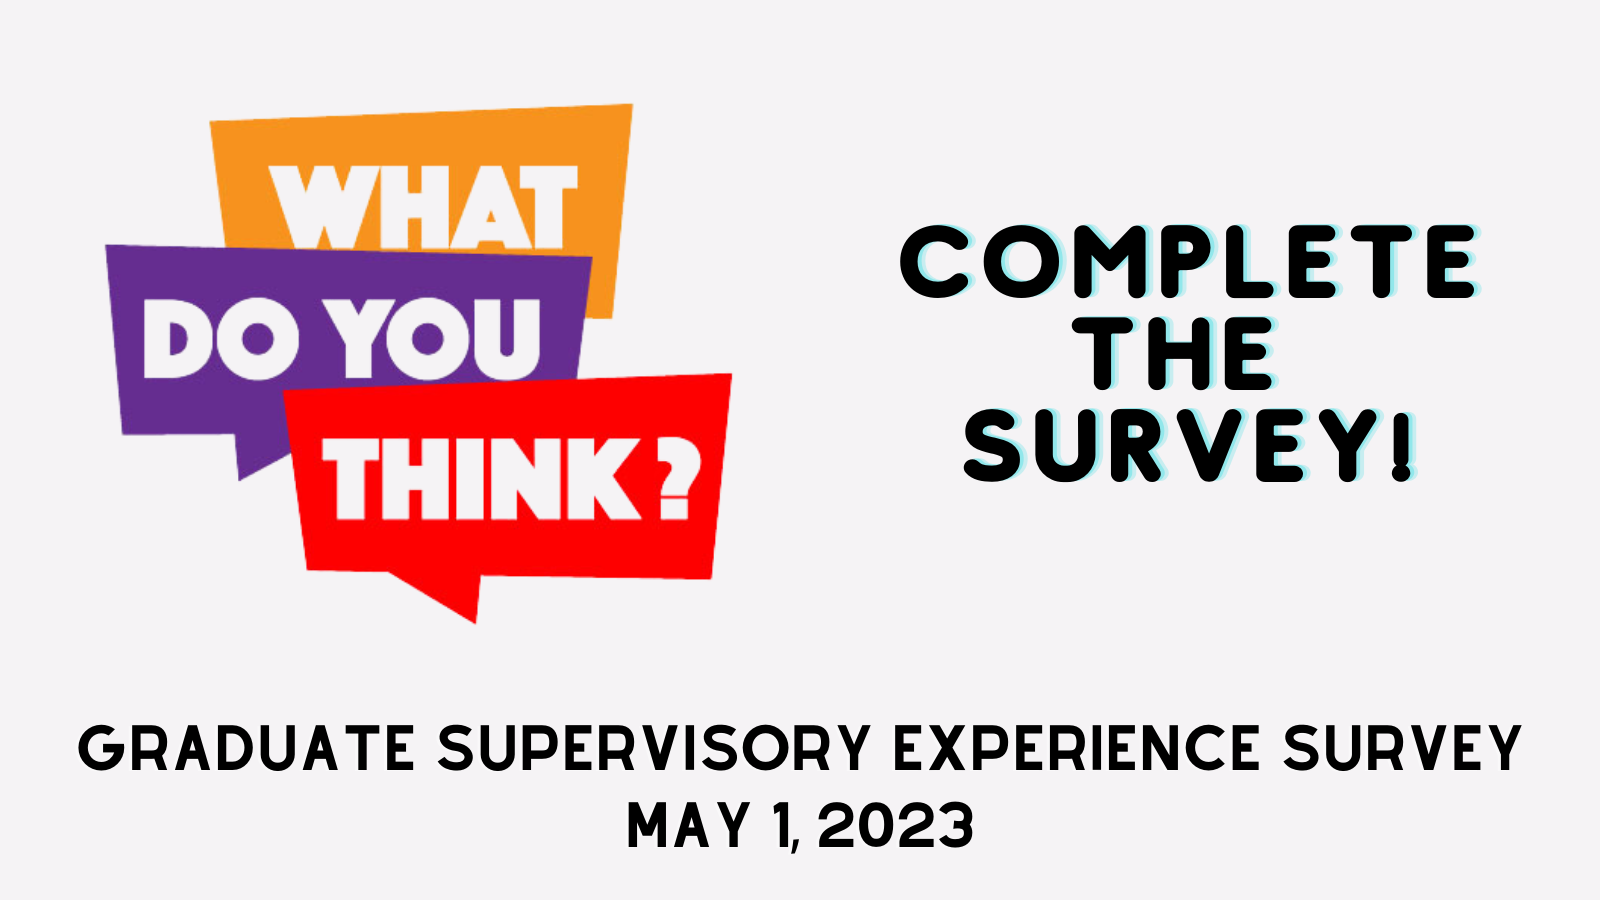 Graduate Supervisory Experience Survey Announcement